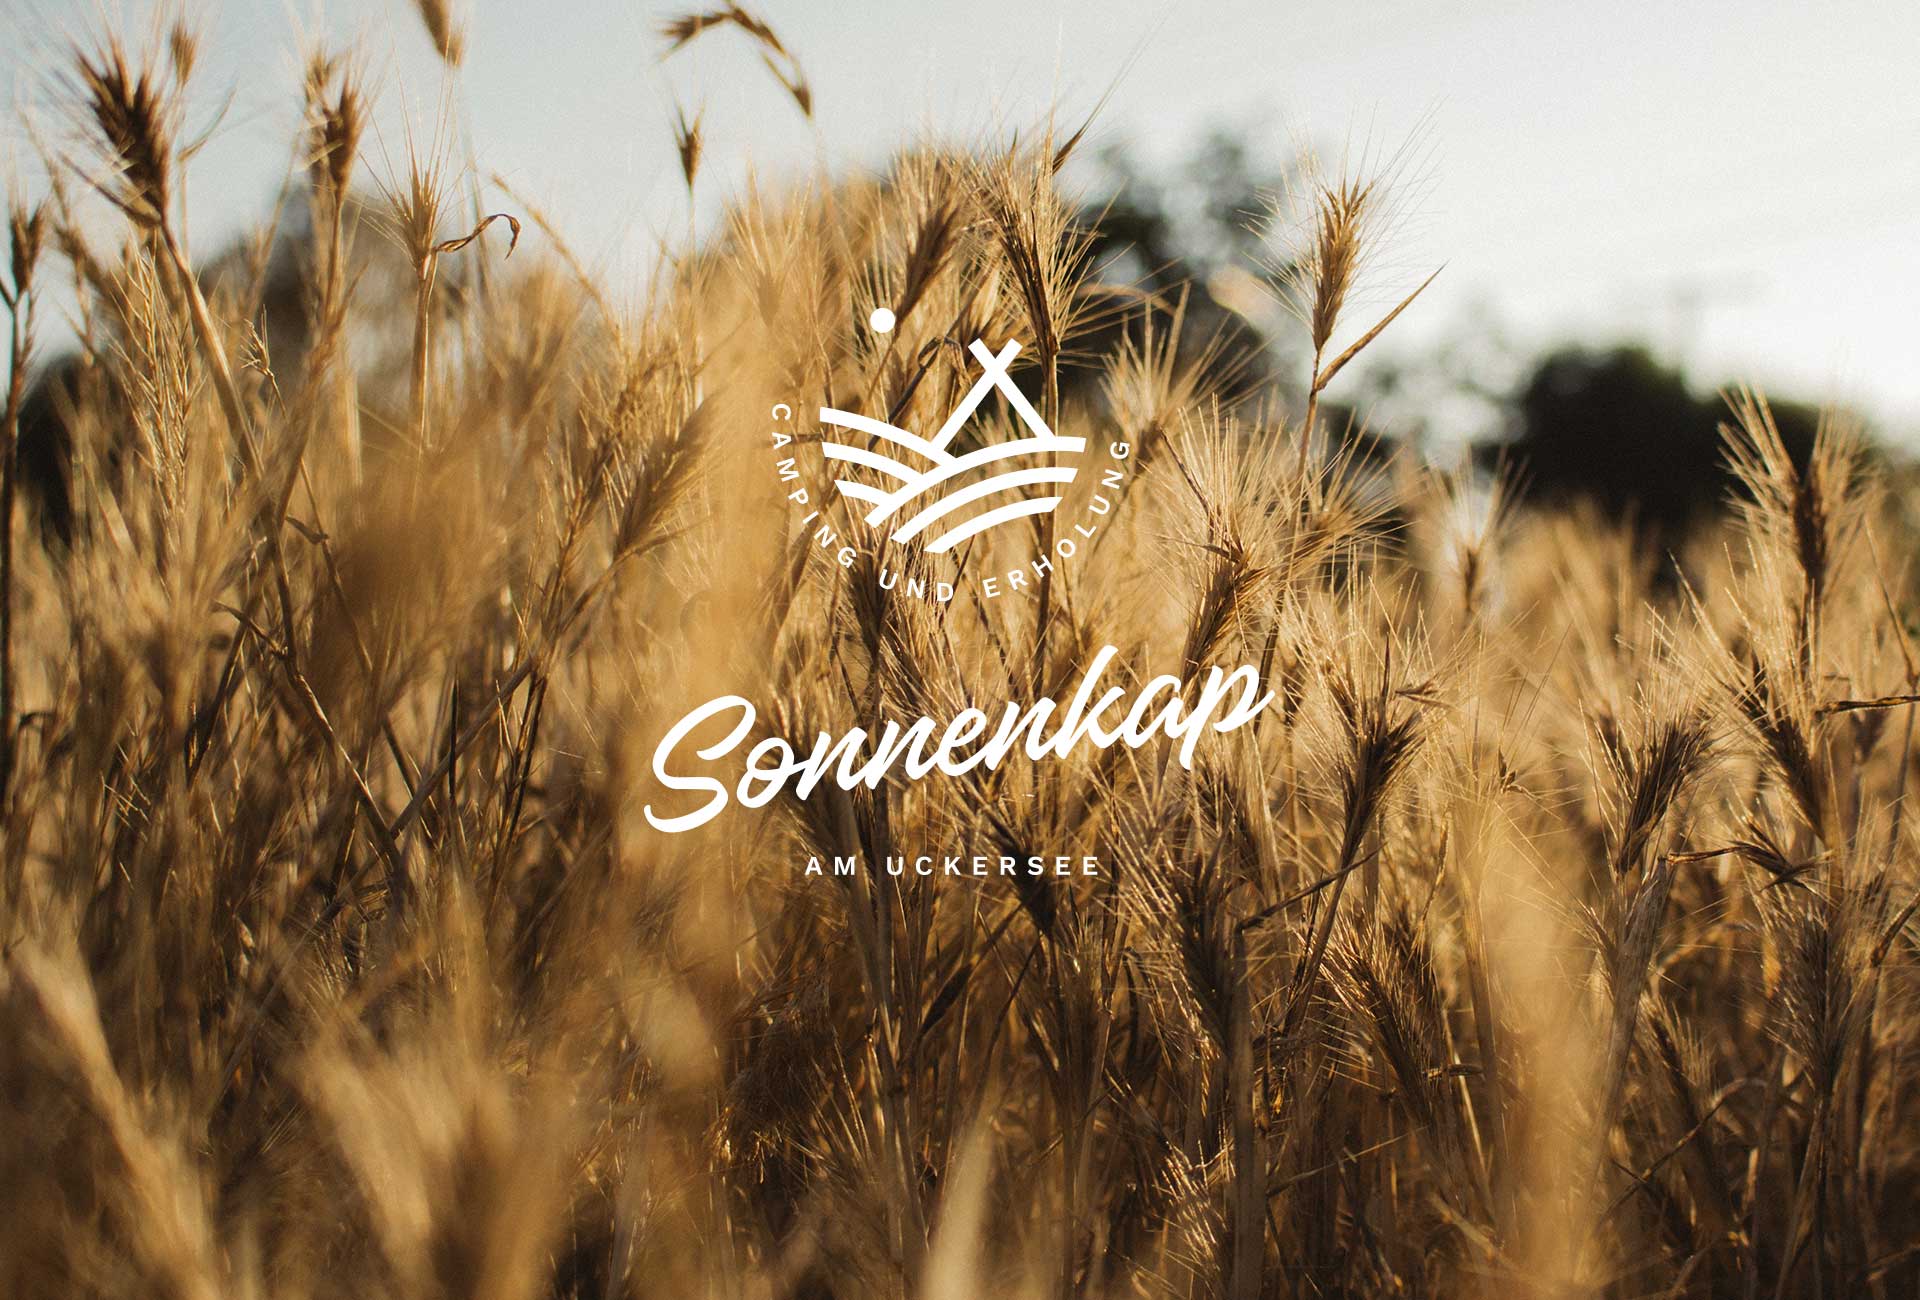 Logogestaltung — Naming, Markendesign und Markentwicklung für Campingplatz Sonnenkap in der Uckermark